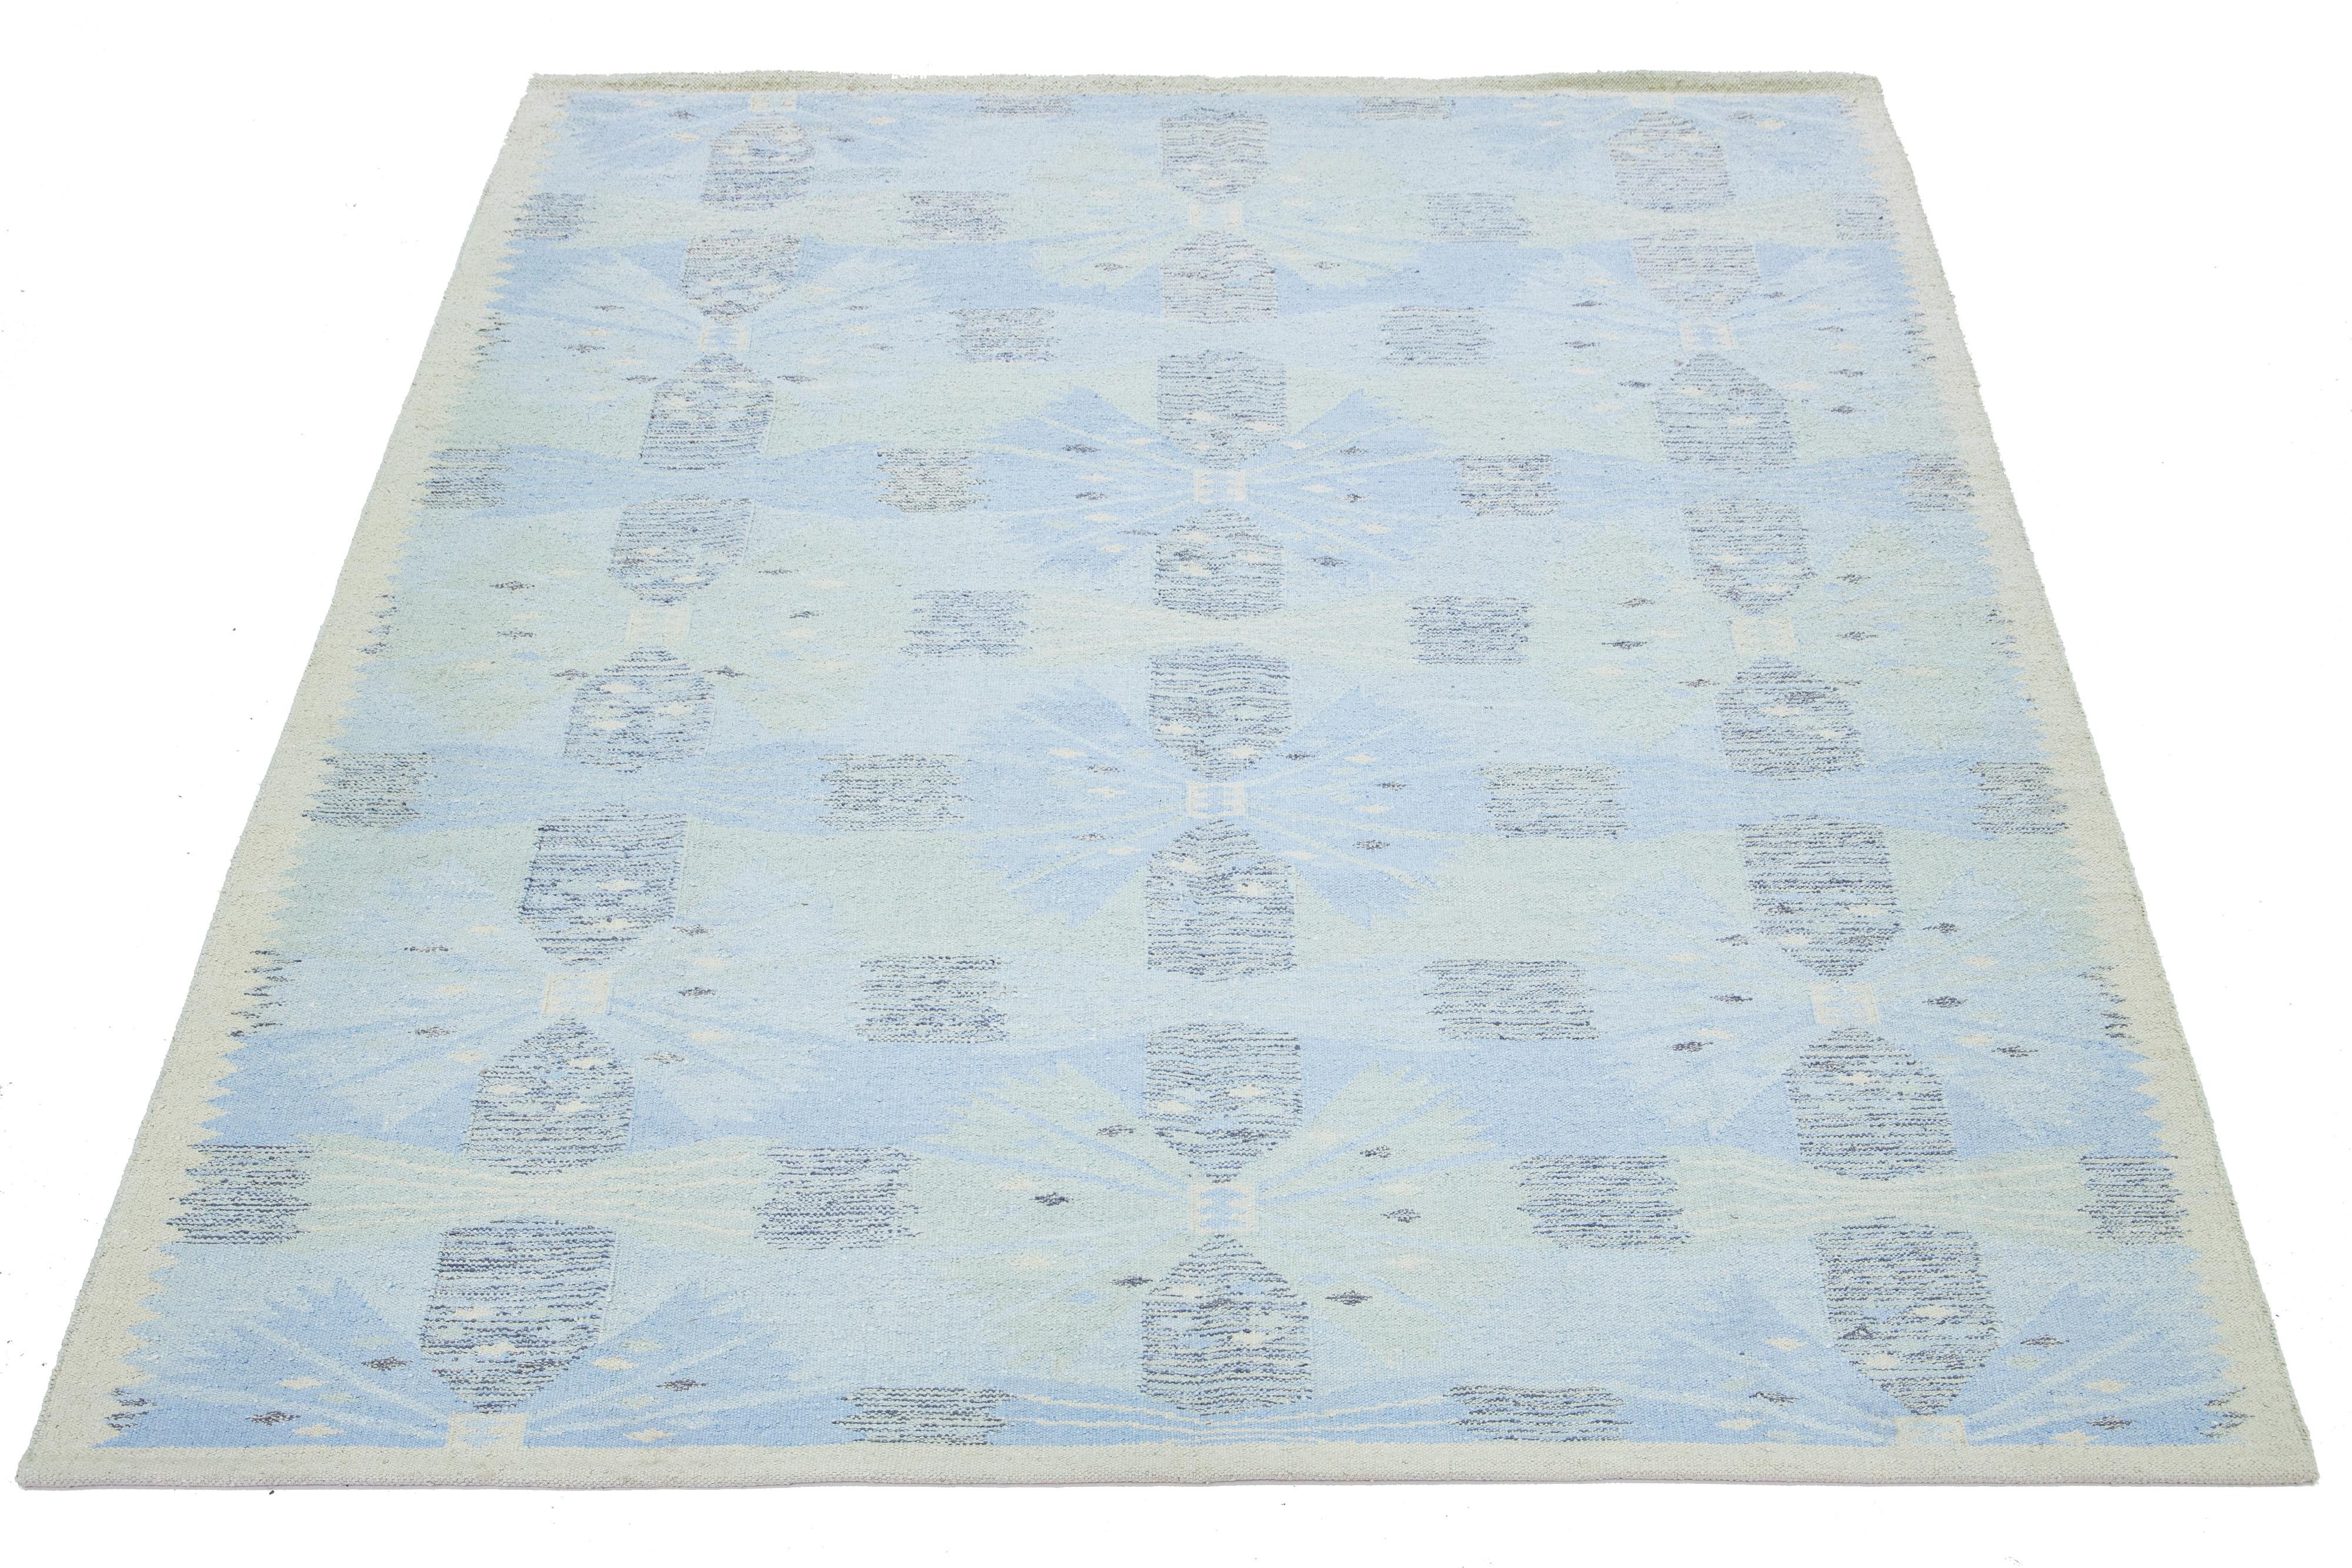 Dieser flachgewebte Teppich aus Wolle und Seide zeichnet sich durch ein schickes, modernes schwedisches Design mit einer beigen Feldfarbe aus. Der Teppich hat ein einzigartiges geometrisches Muster in hellblauen Farbtönen.

 Dieser Teppich misst 9'